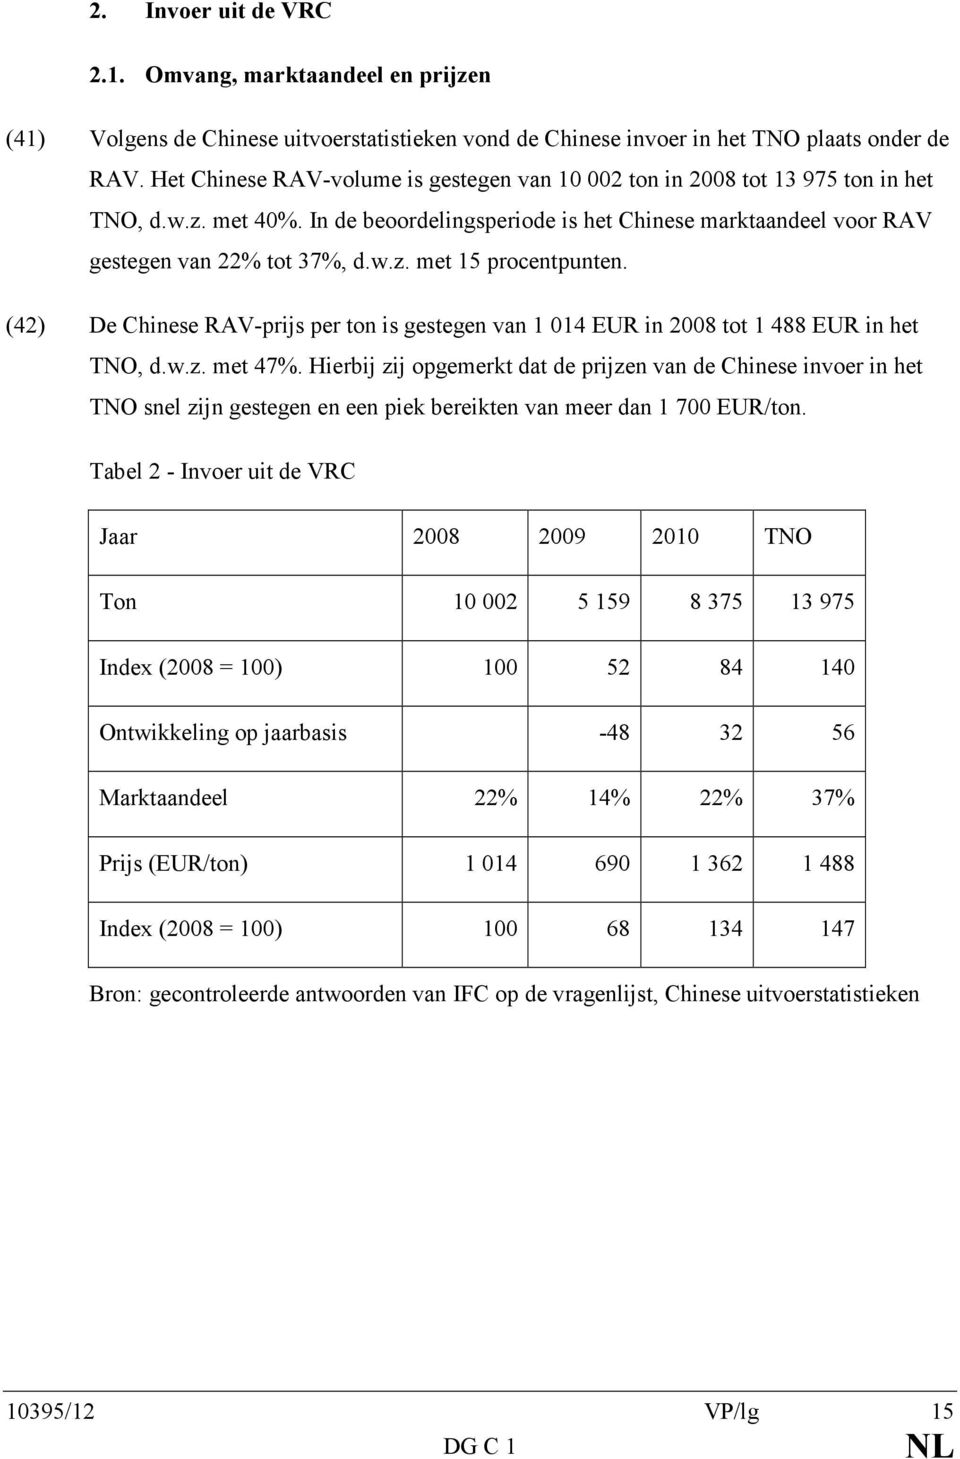 (42) De Chinese RAV-prijs per ton is gestegen van 1 014 EUR in 2008 tot 1 488 EUR in het TNO, d.w.z. met 47%.